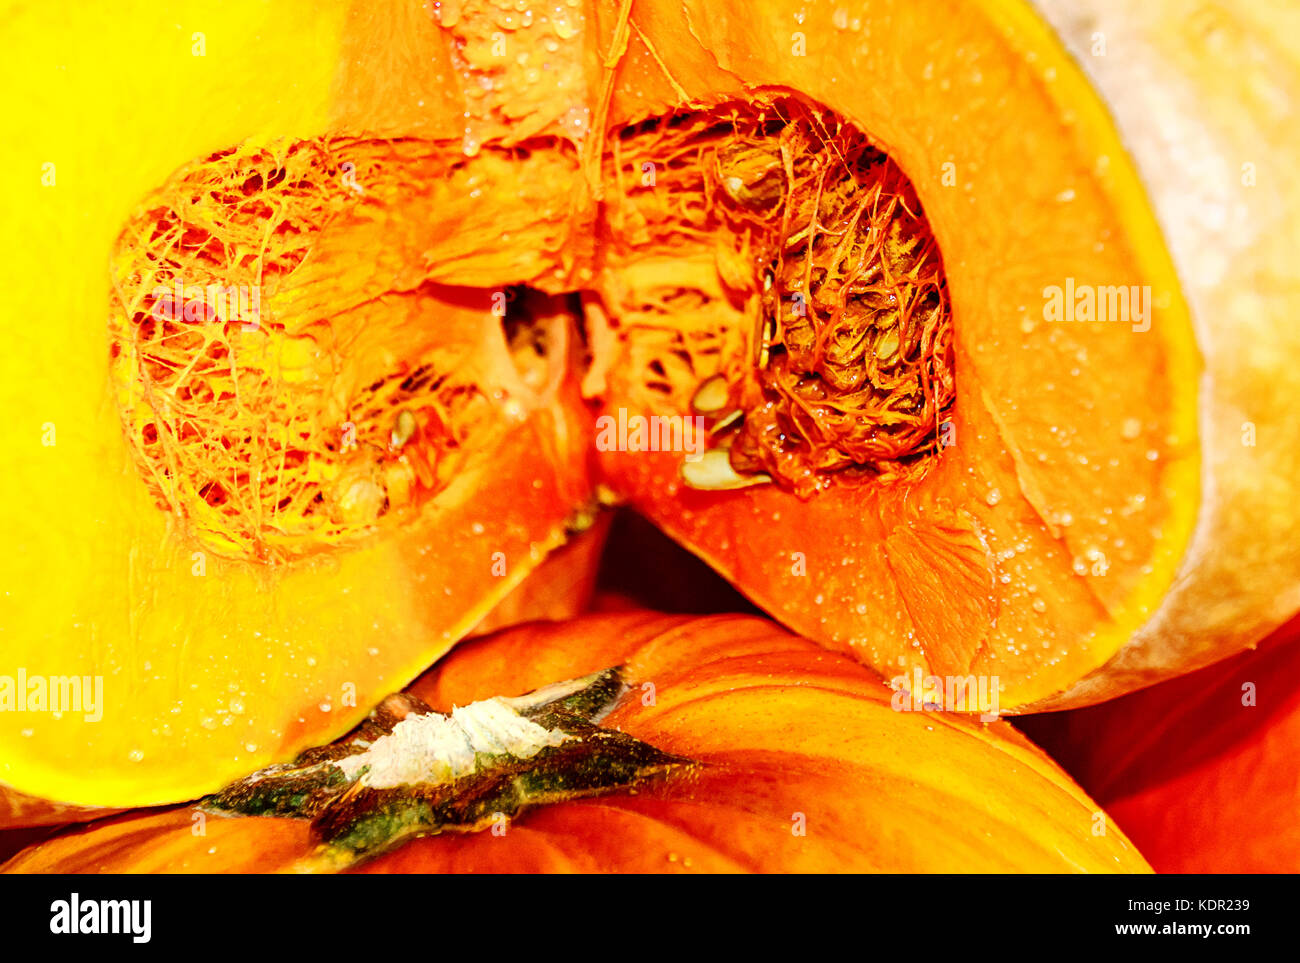 Spessore, deep orange, moderatamente dolce carne di mature bellissime musquee de provence, o zucca da favola Foto Stock